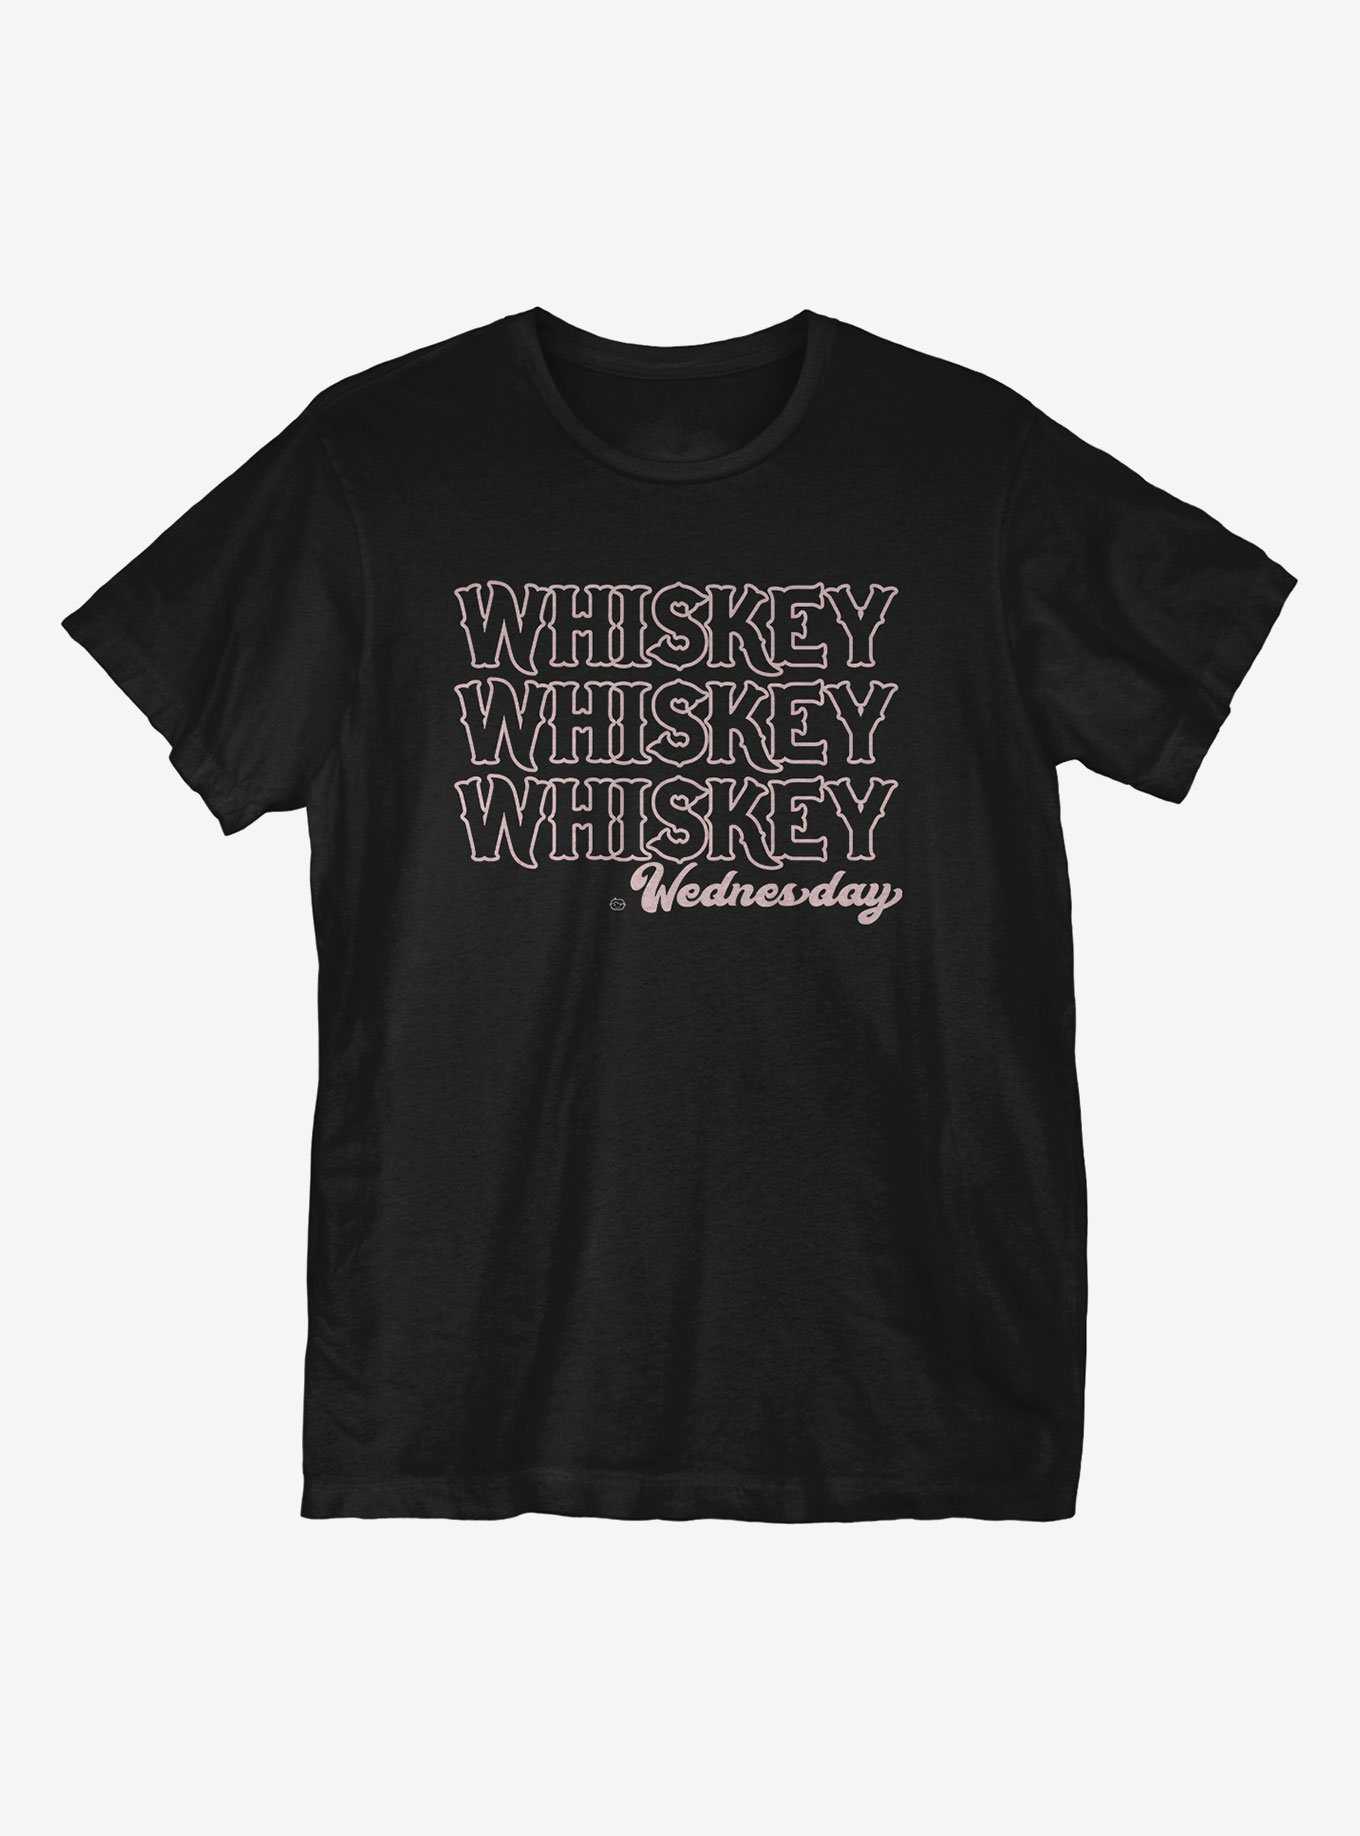 Whiskey Whiskey Whiskey Wednesday T-Shirt, , hi-res